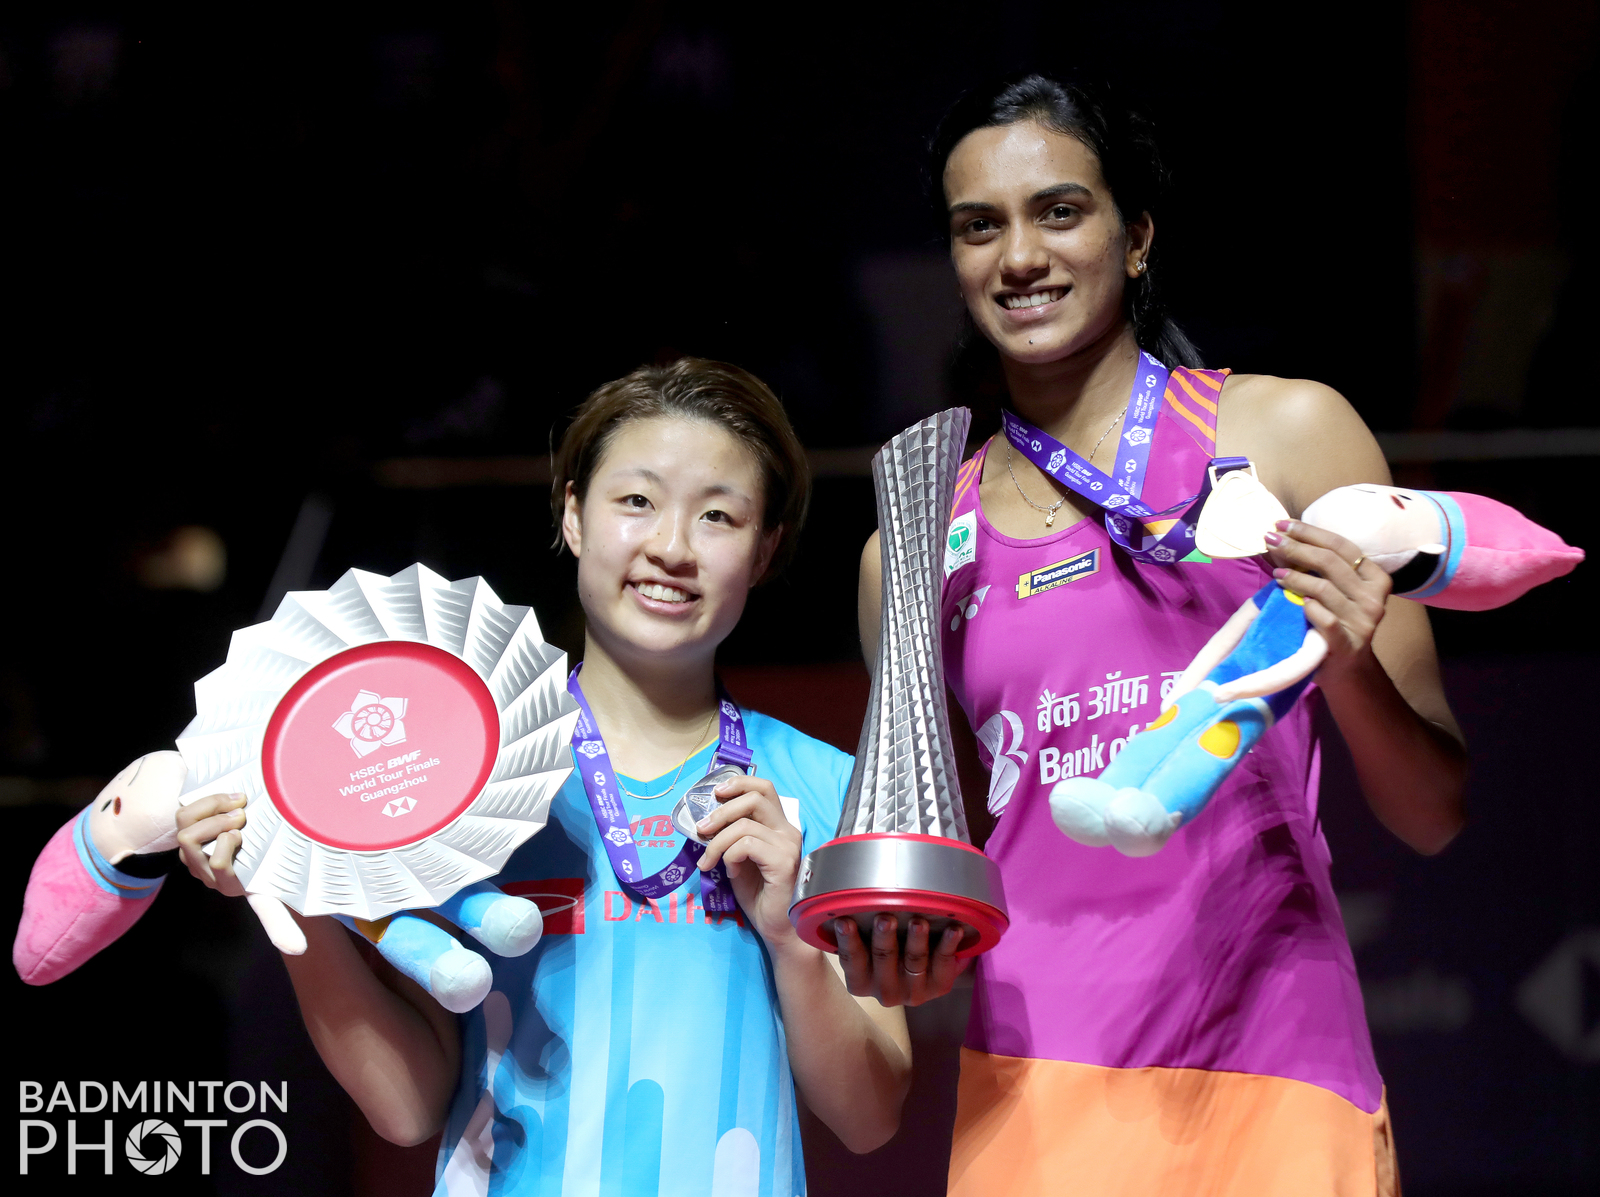 World tour finals badminton 2021